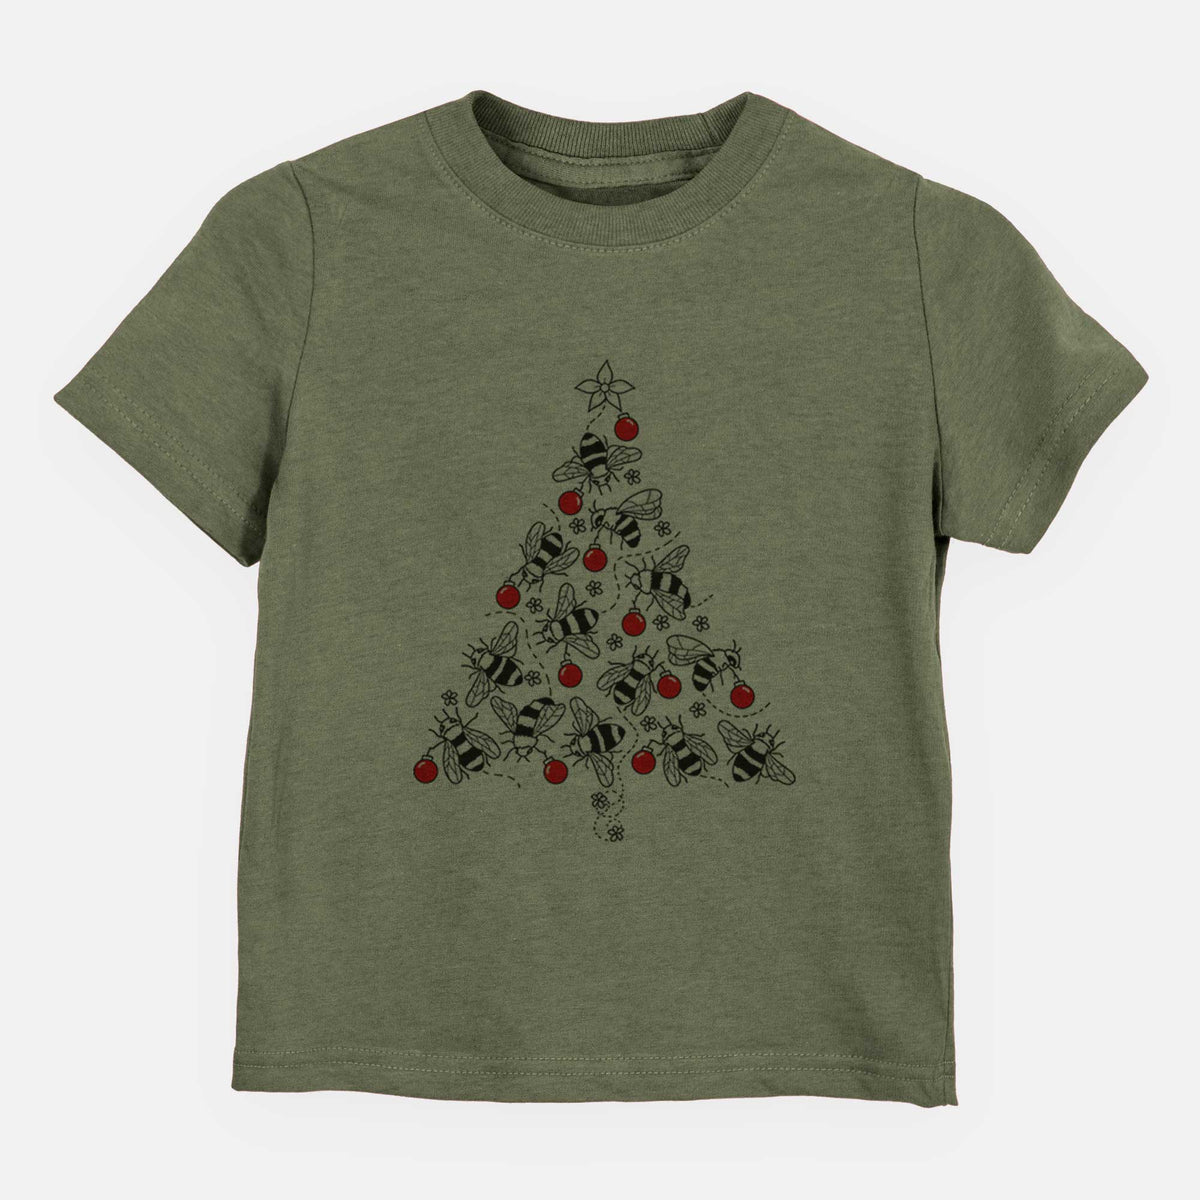 Christmas Tree of Bees - Kids Shirt